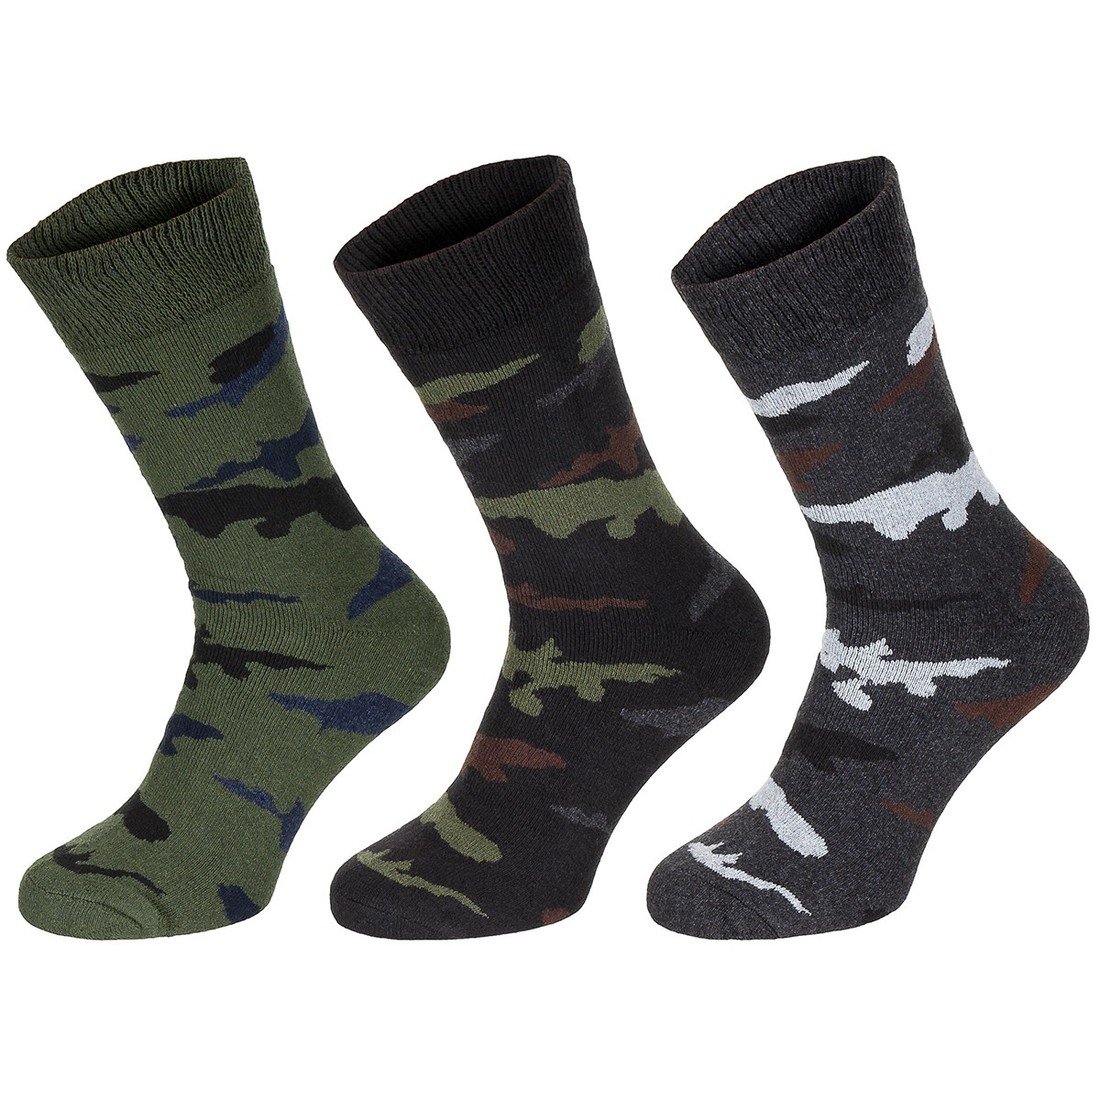 Ponožky vysoké Mezza Calzetta Esercito 3 ks - olivové-černé-šedé, 39-42